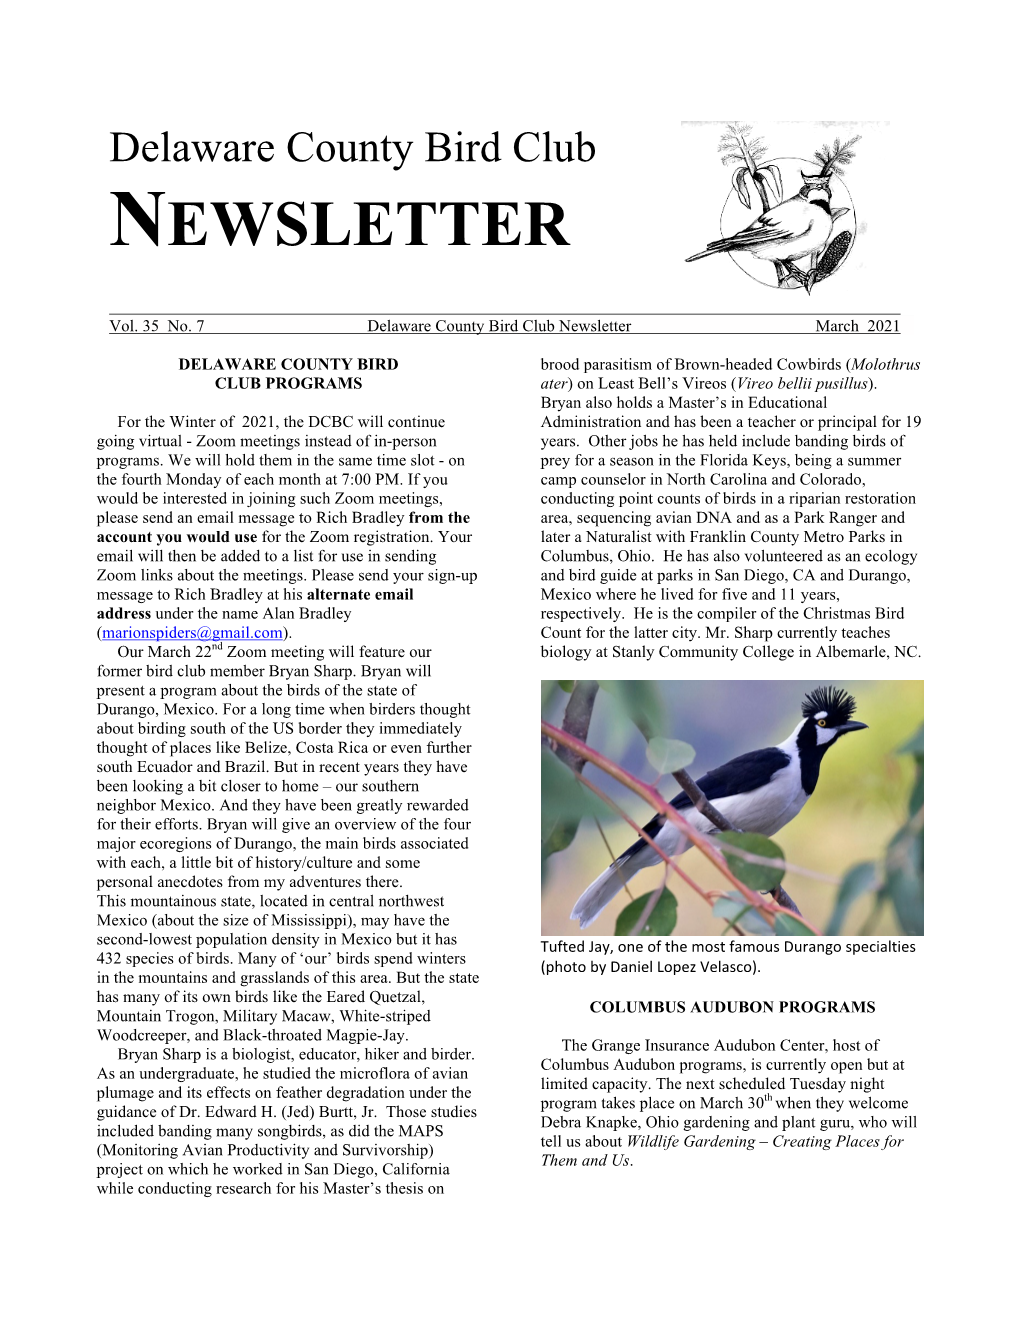 Newsletter for Columbus Audubon Programming